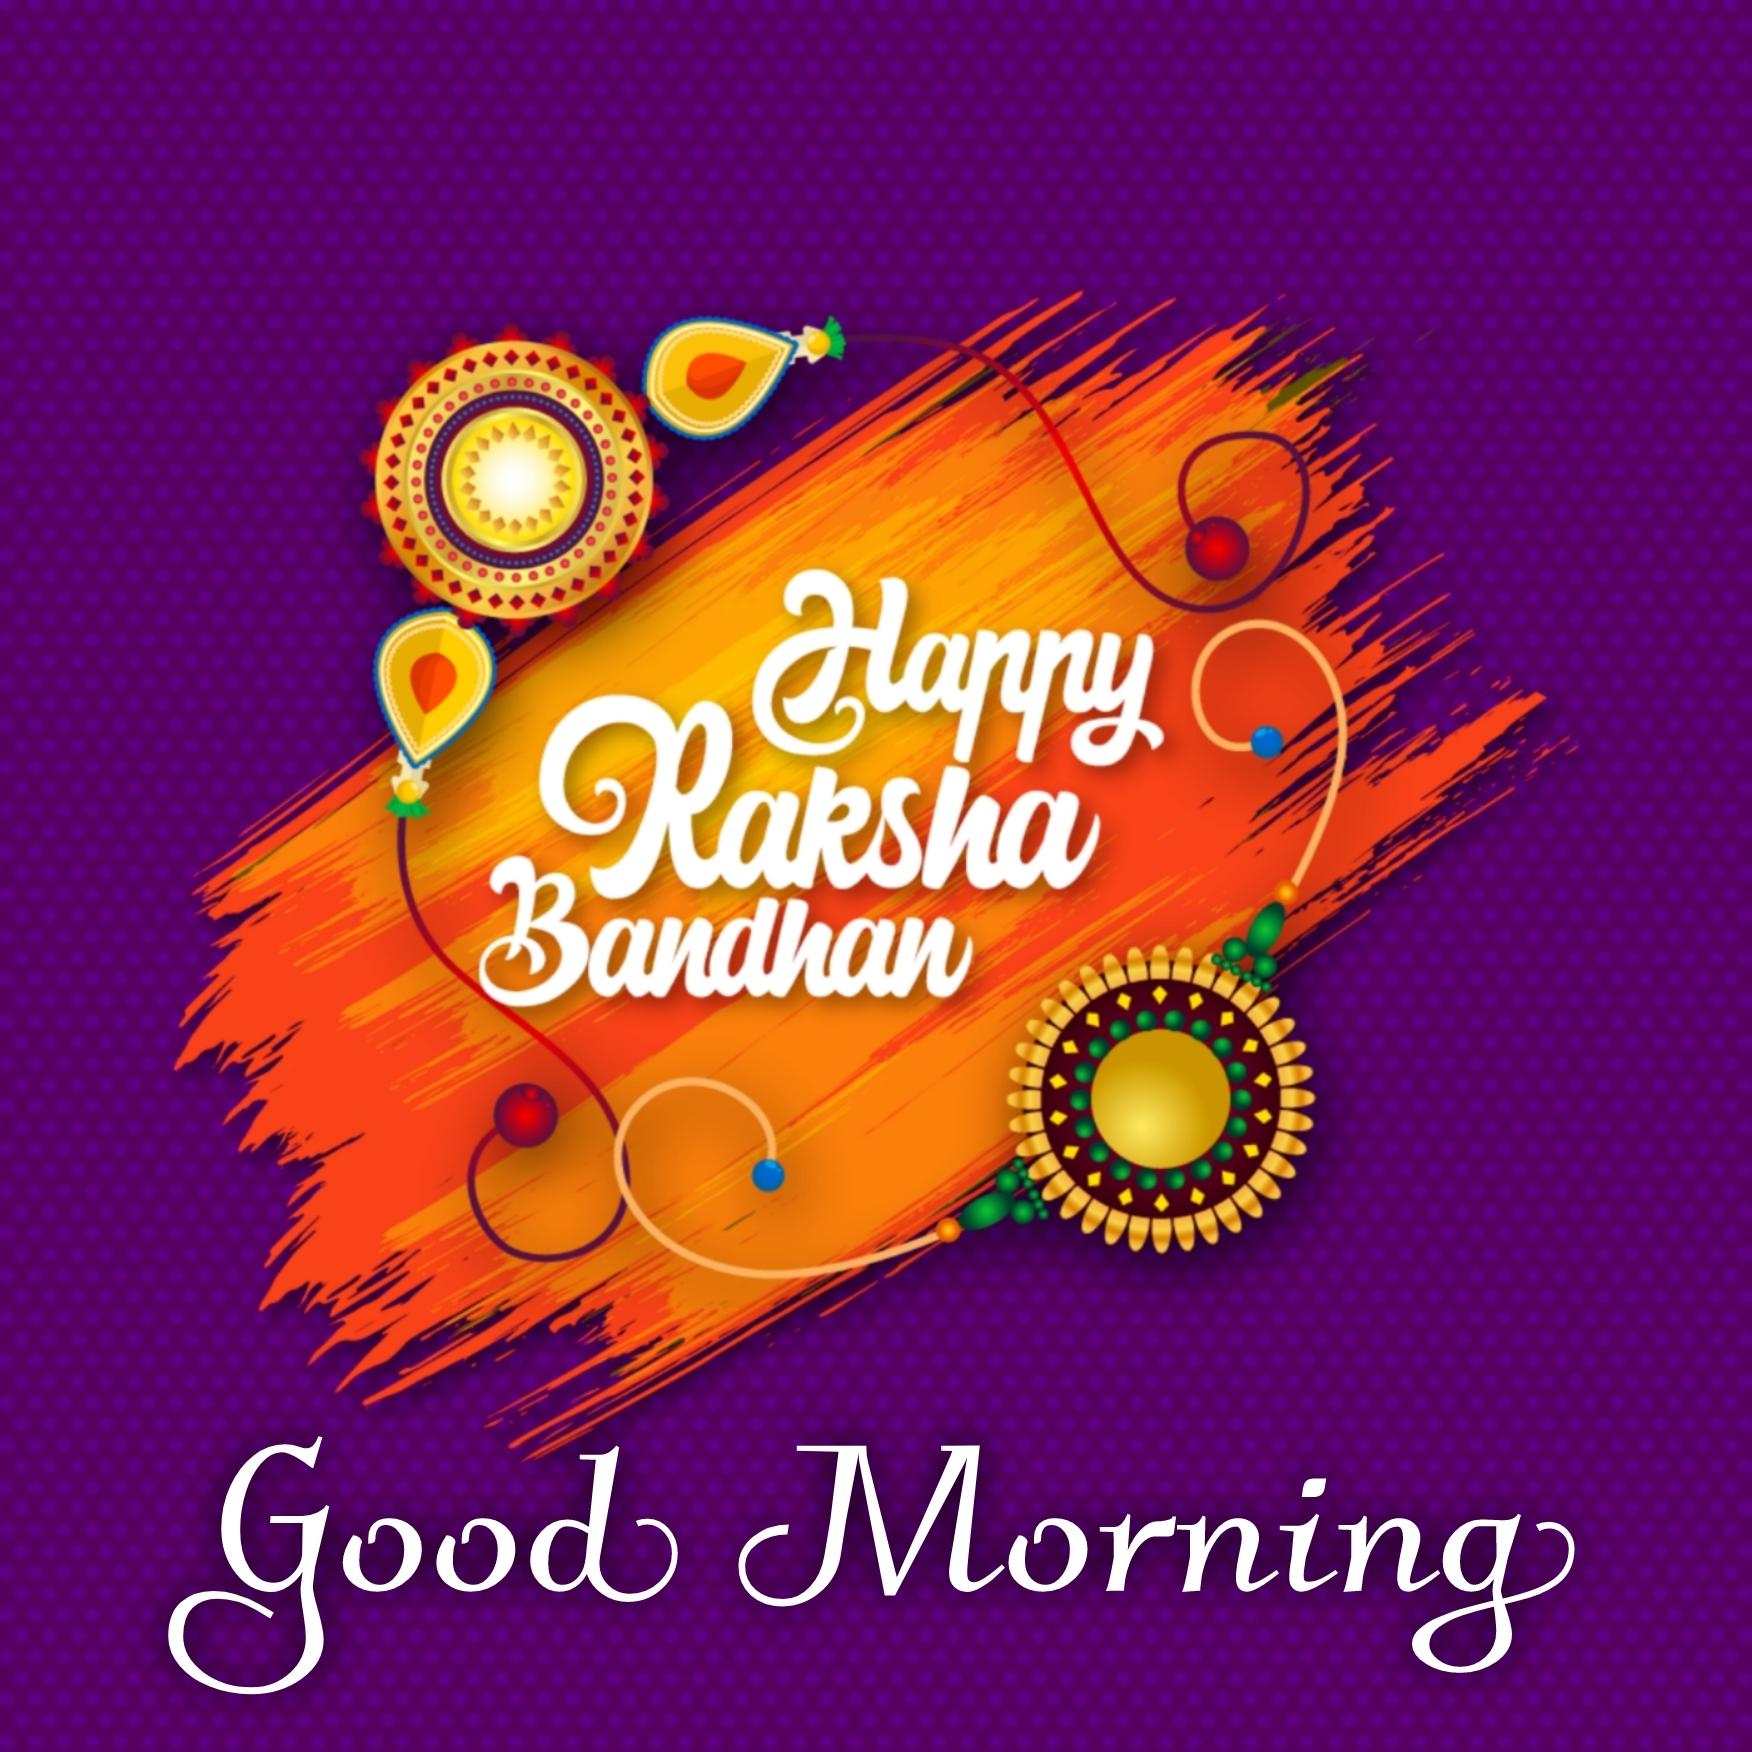 Good Morning Happy Raksha Bandhan Images